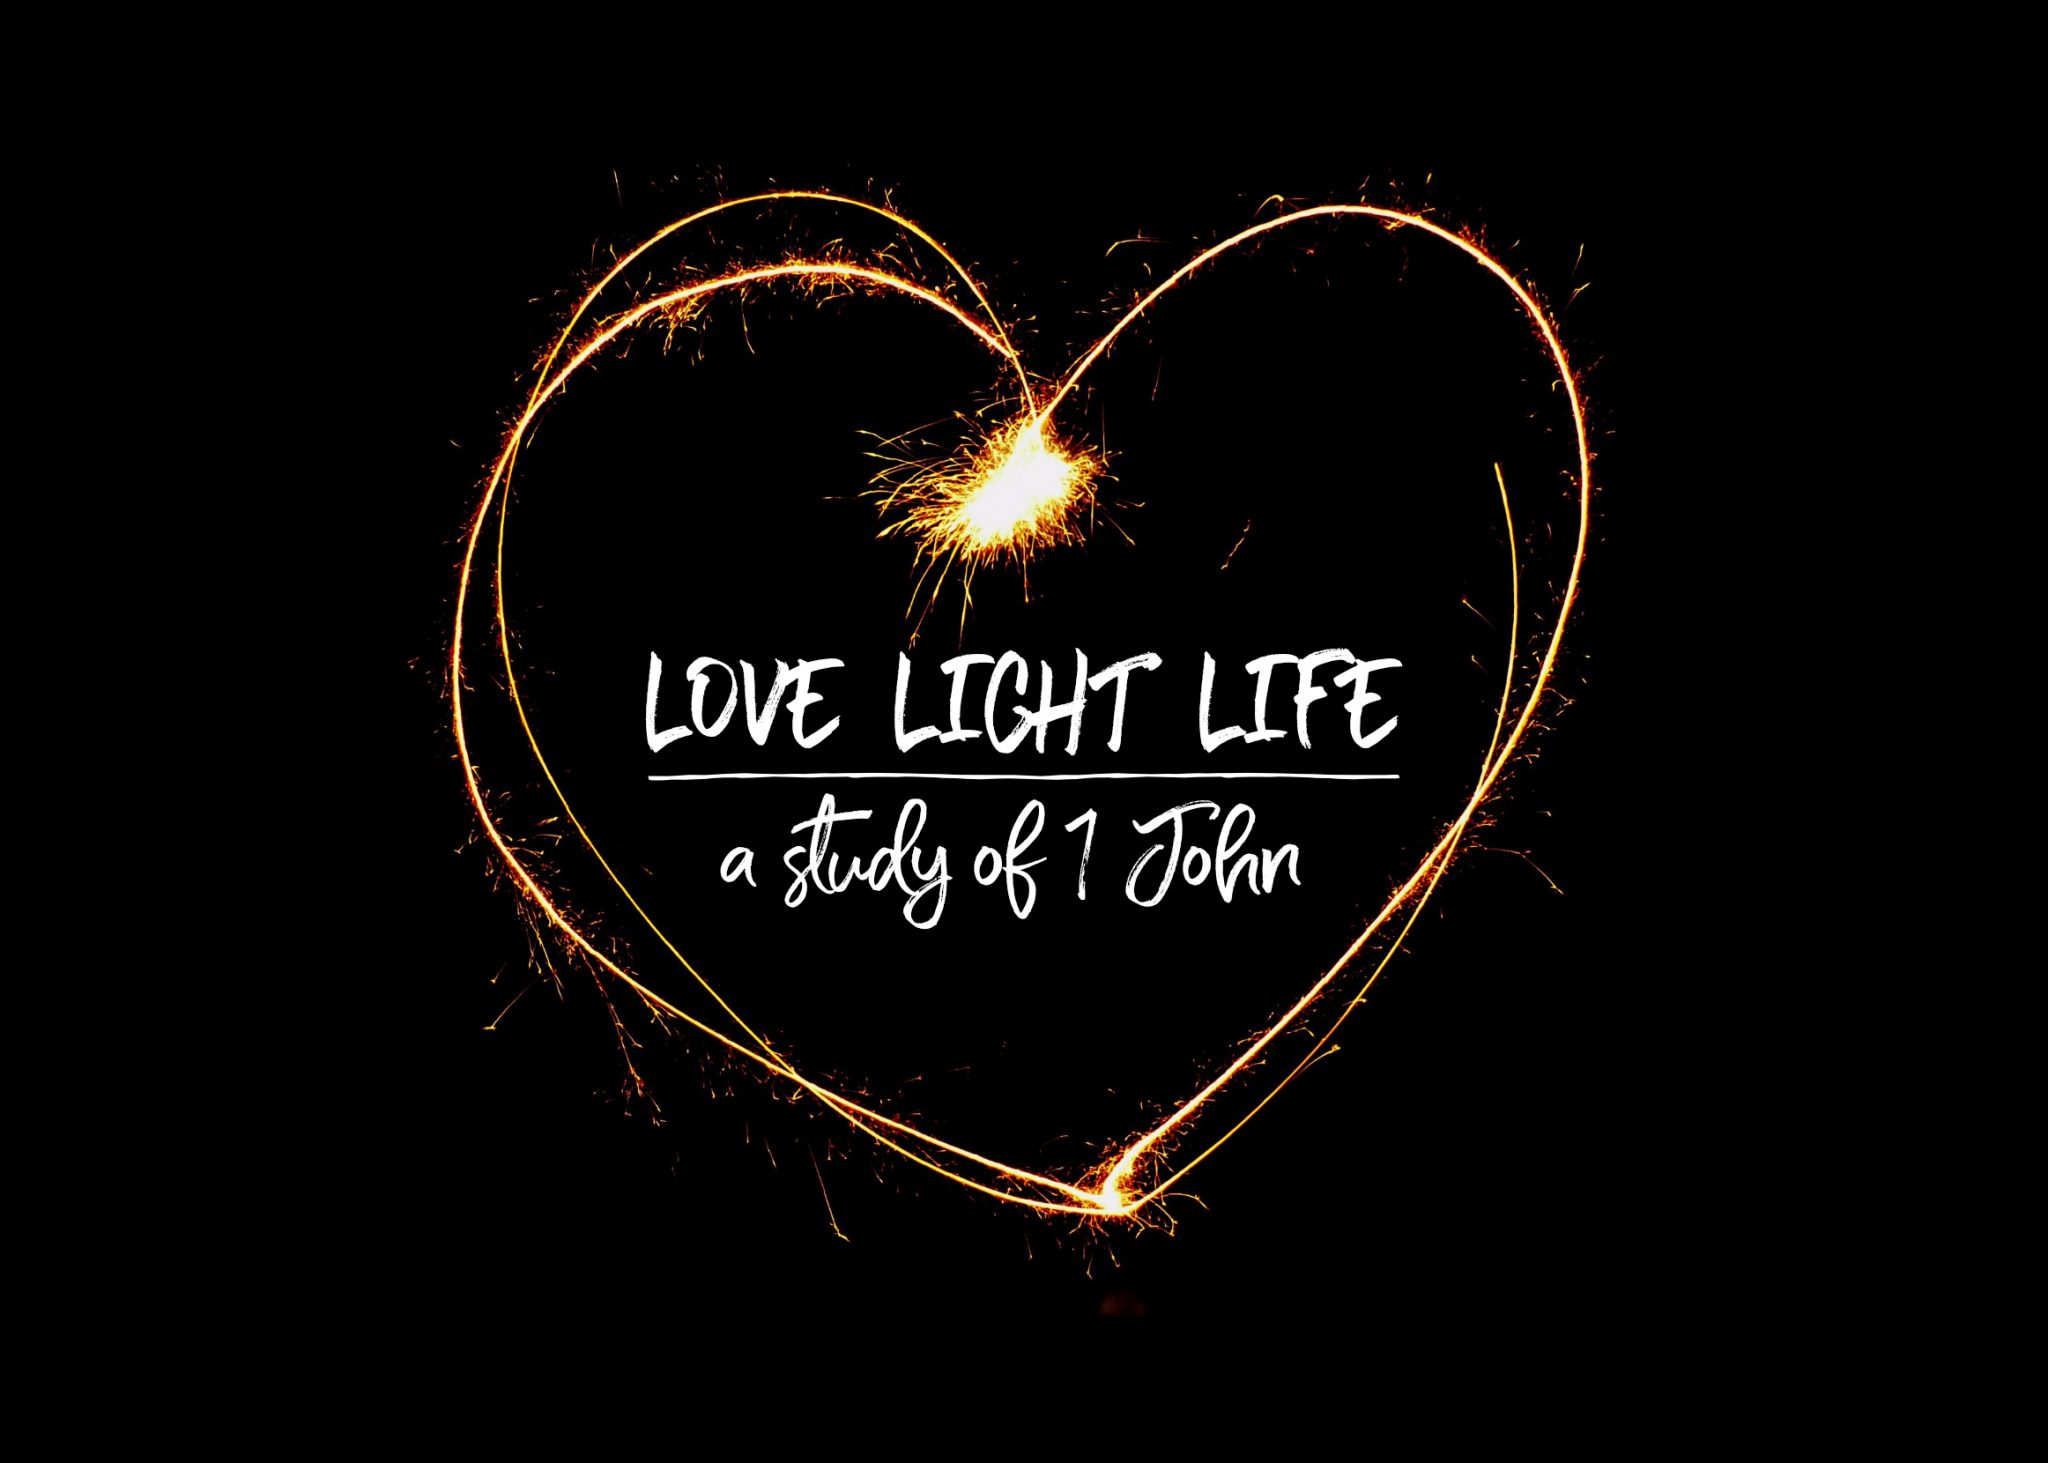 Love Light Life featured The Church Next Door AZ